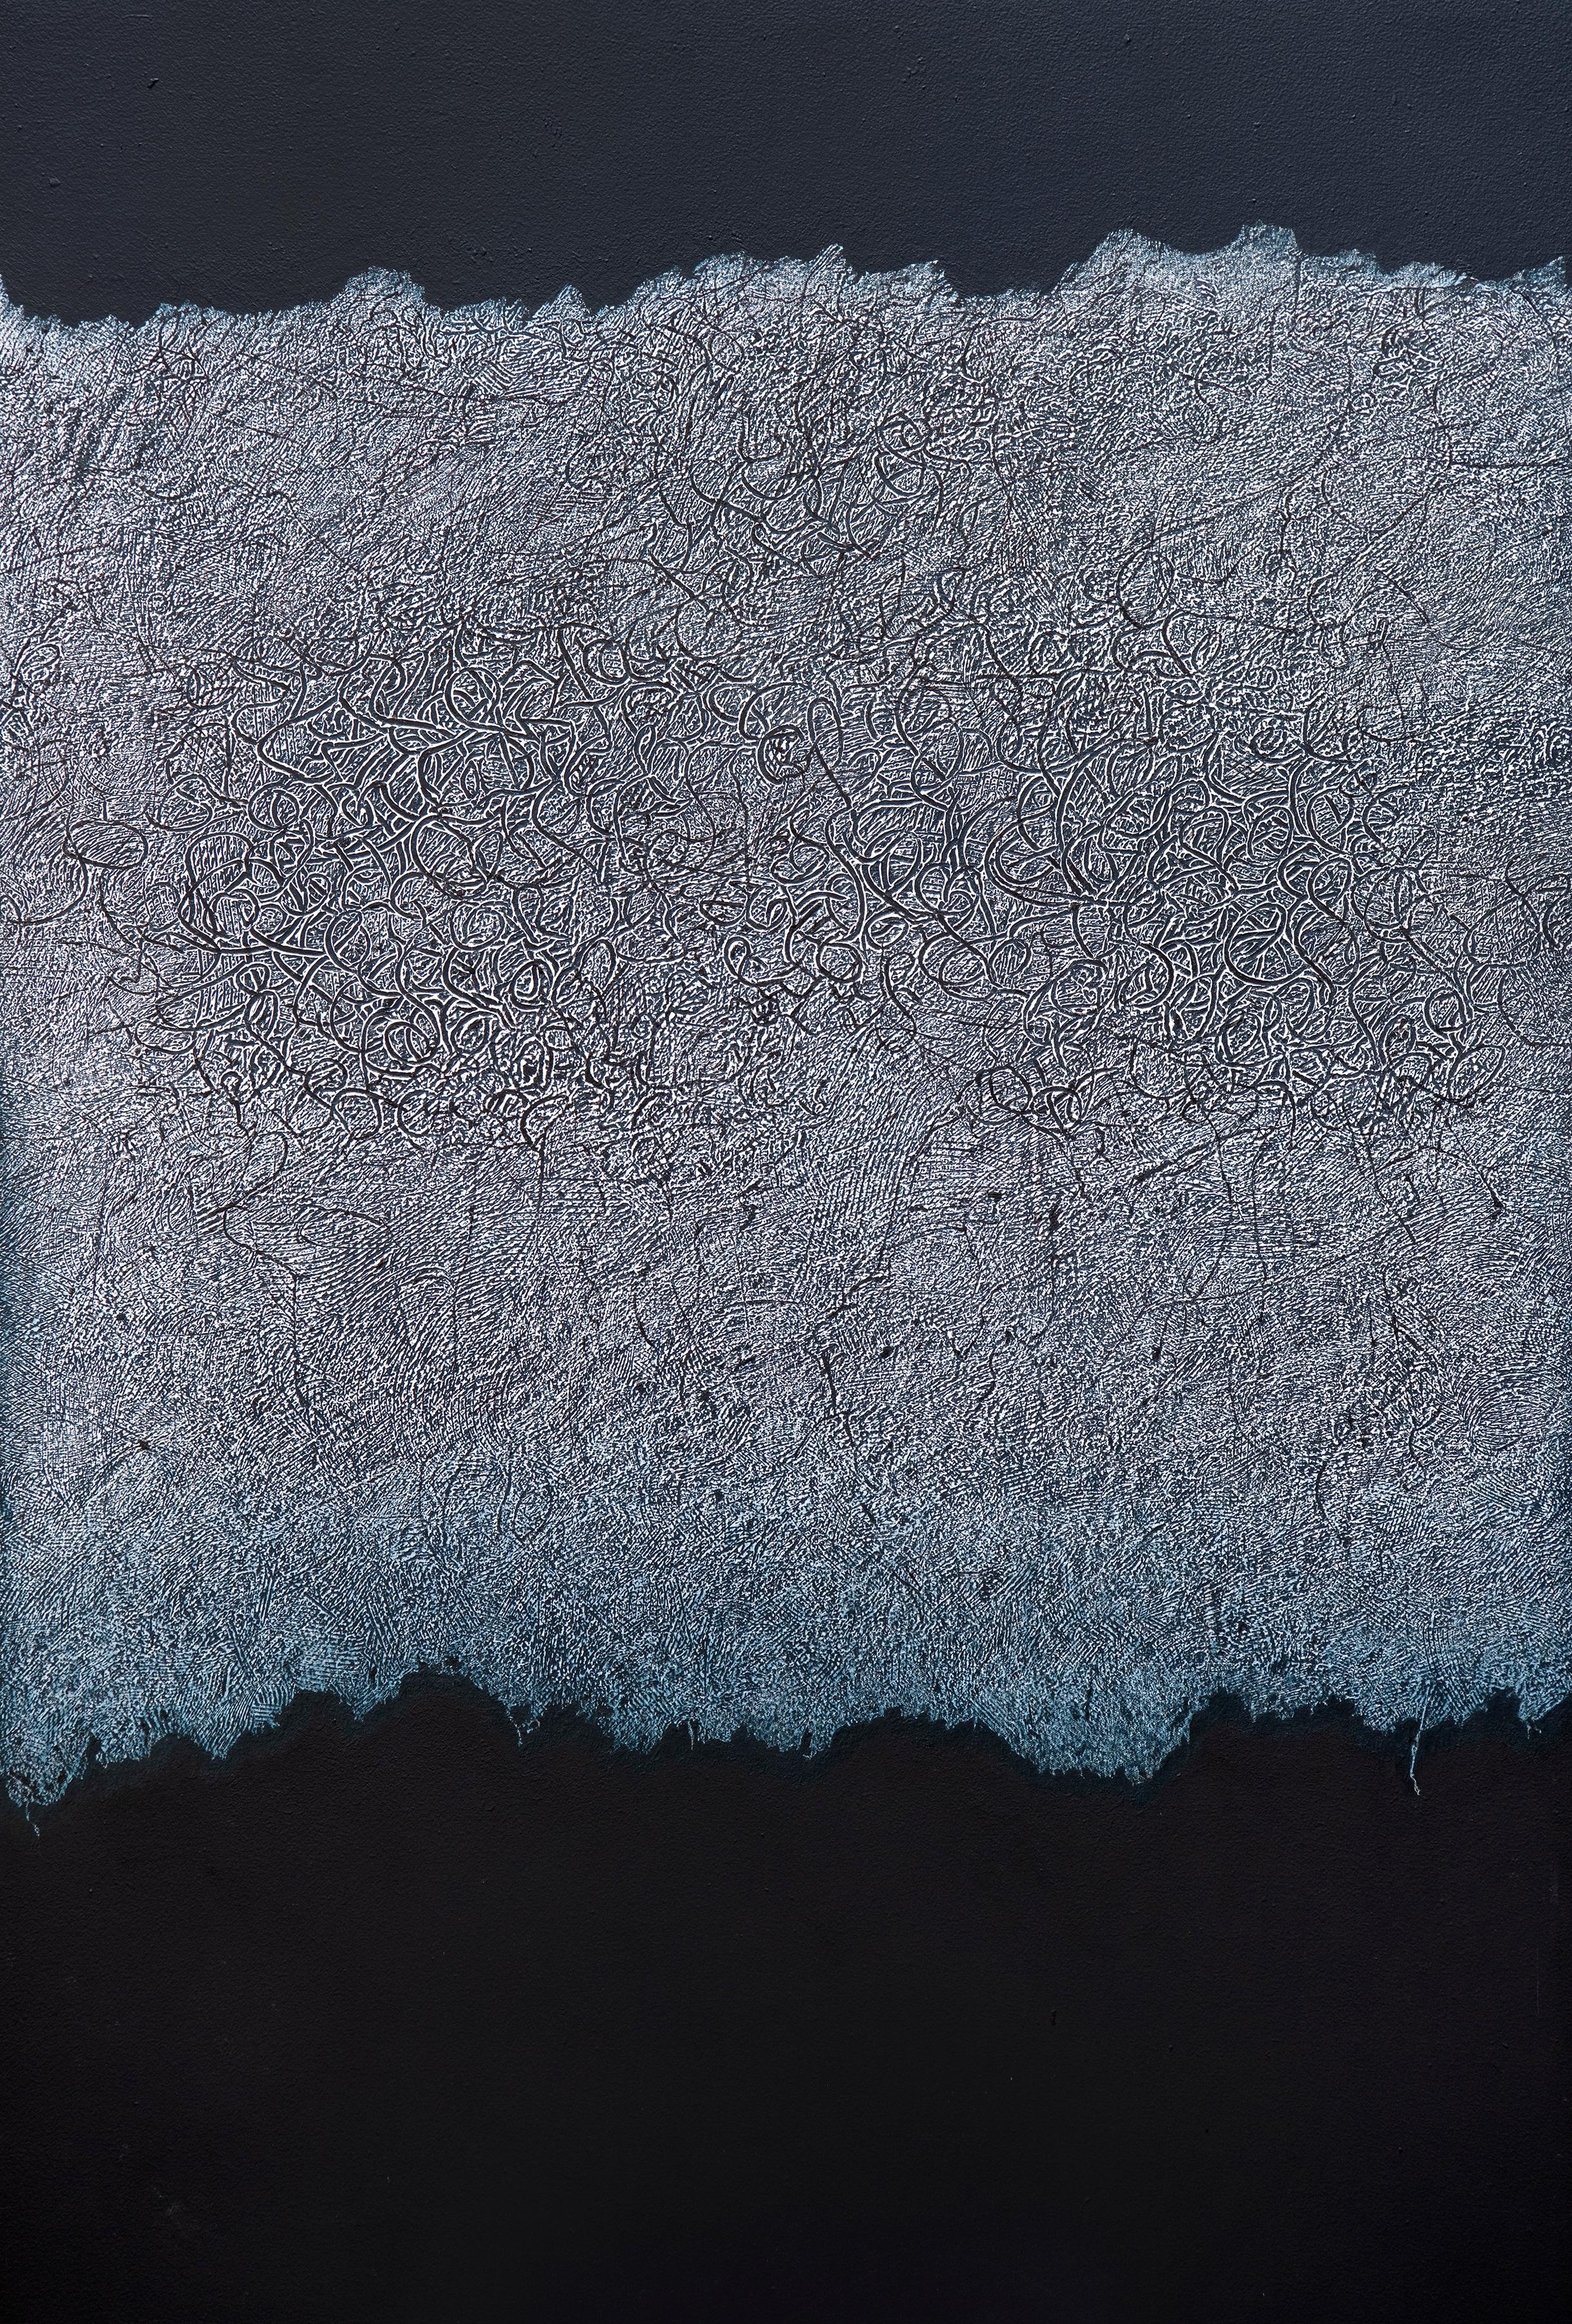 Abstract Painting Bill Maggio - Grande texture abstraite géométrique contemporaine en noir et blanc